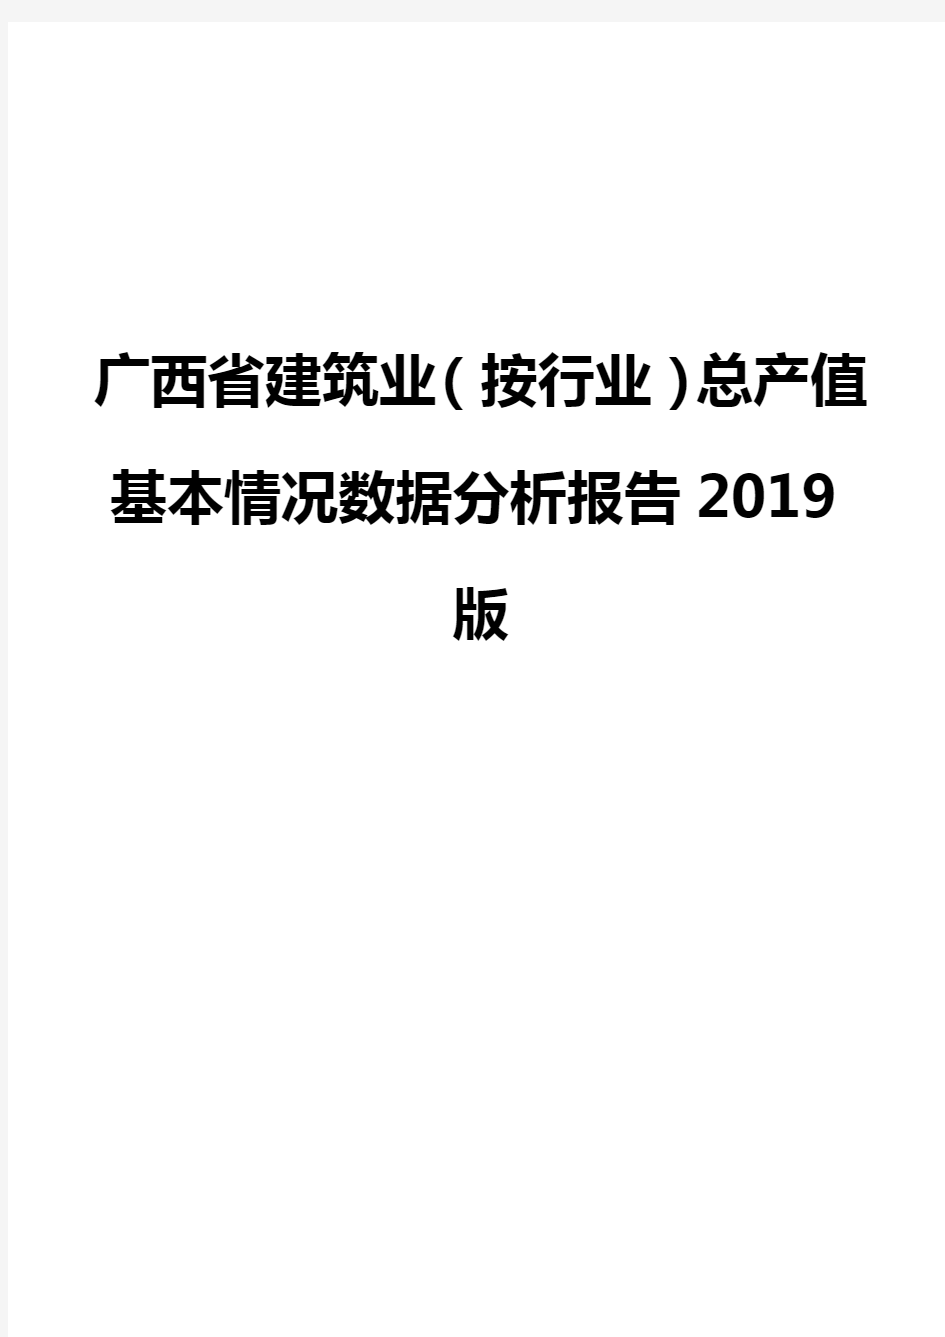 广西省建筑业(按行业)总产值基本情况数据分析报告2019版